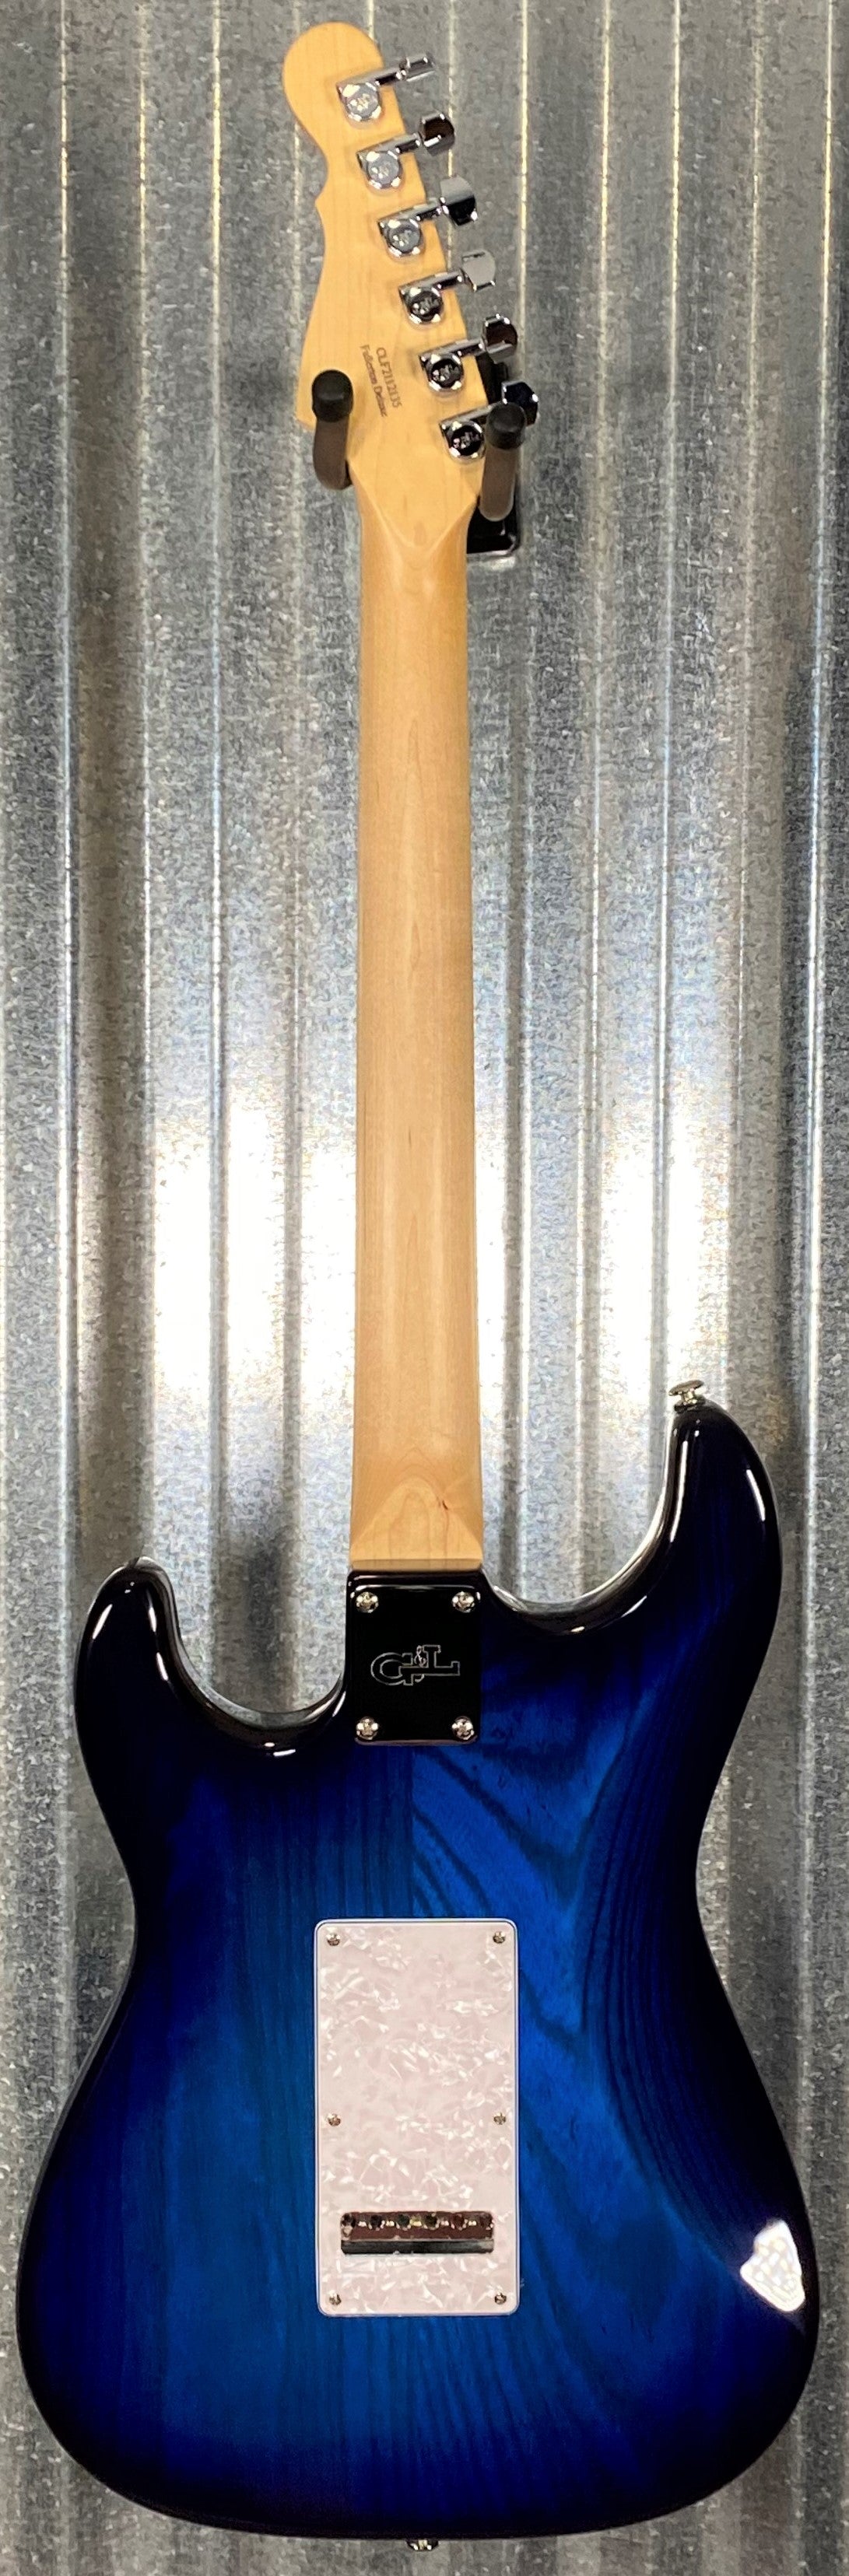 G&L USA Fullerton Deluxe S-500 Blueburst Guitar & Bag S500 #2135